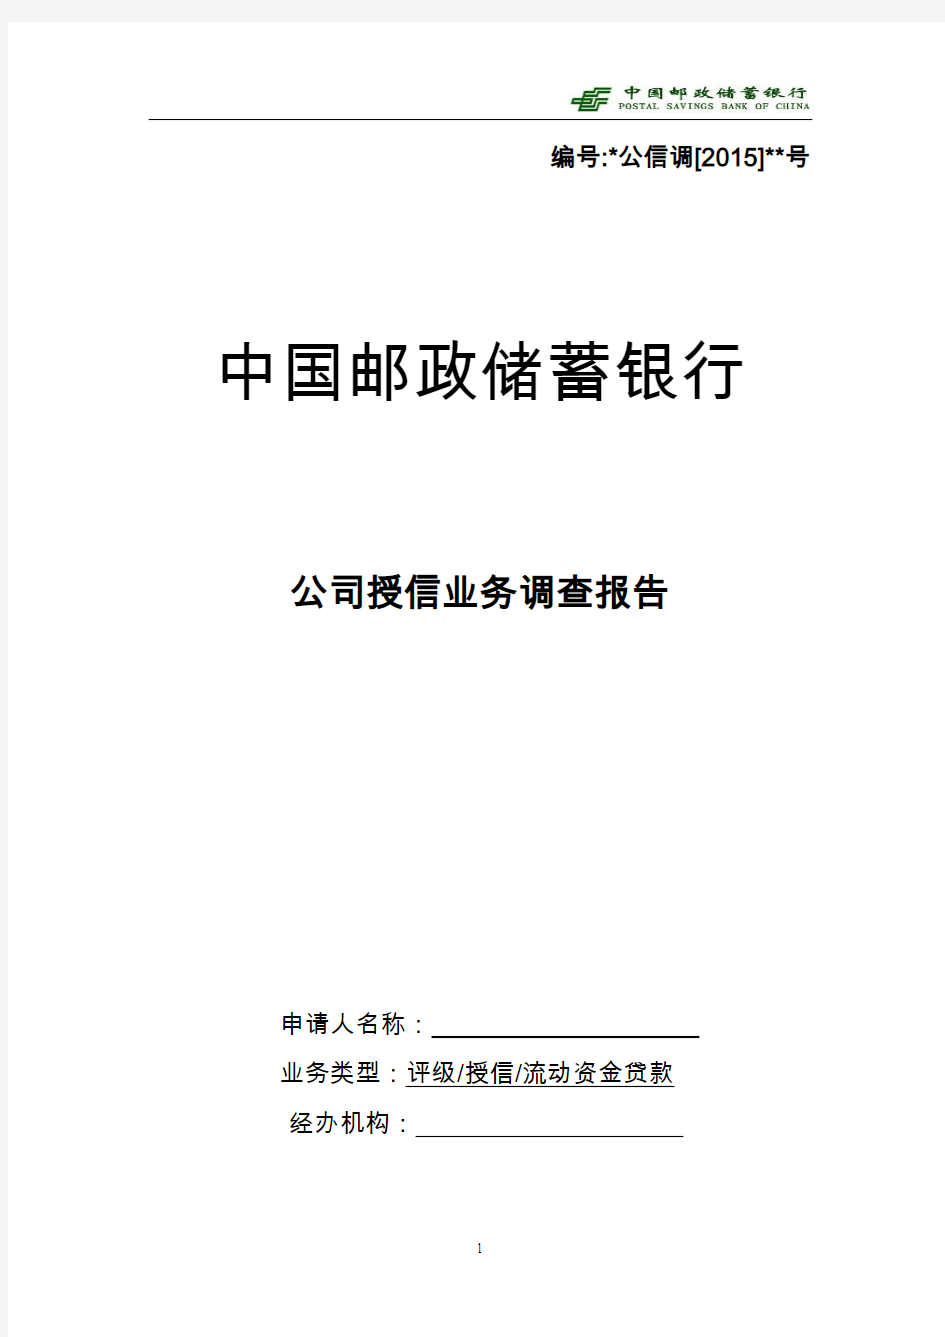 3中国邮政储蓄银行公司授信业务调查报告(2015版)-流动资金(三流合一)